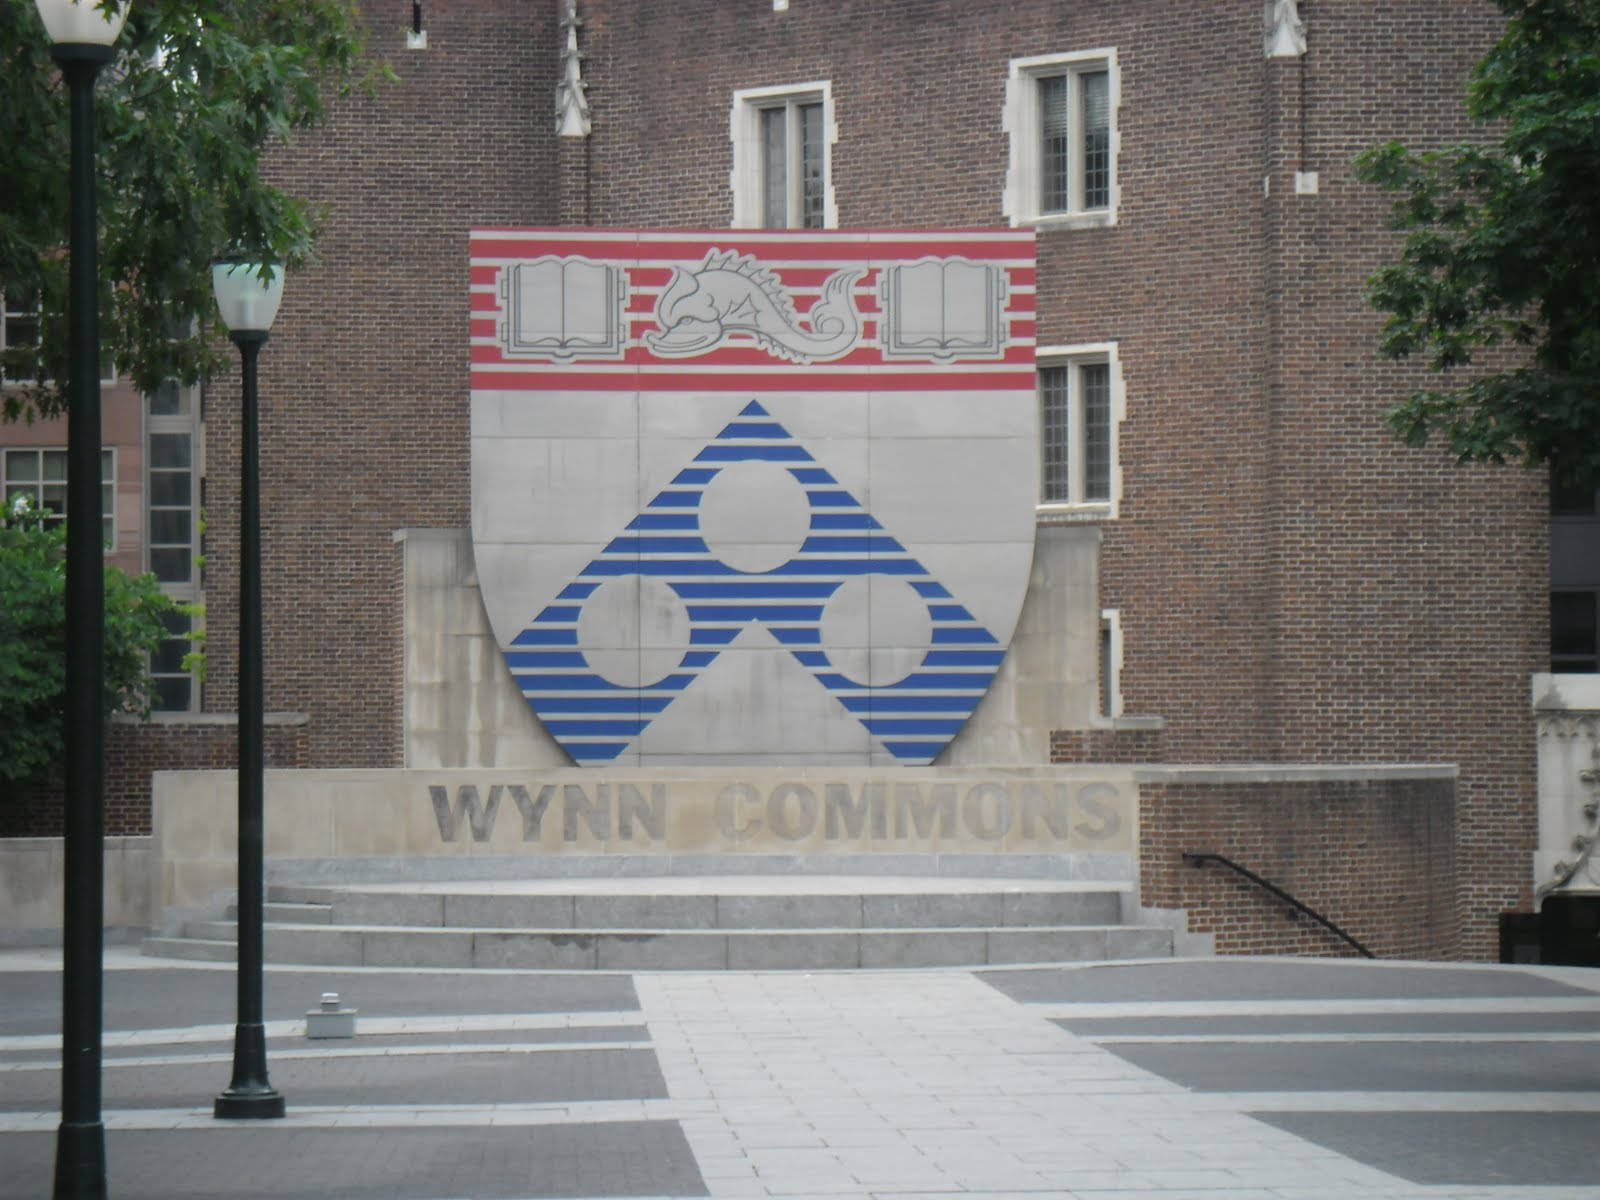 Universitätvon Pennsylvania Wynn Commons Wallpaper